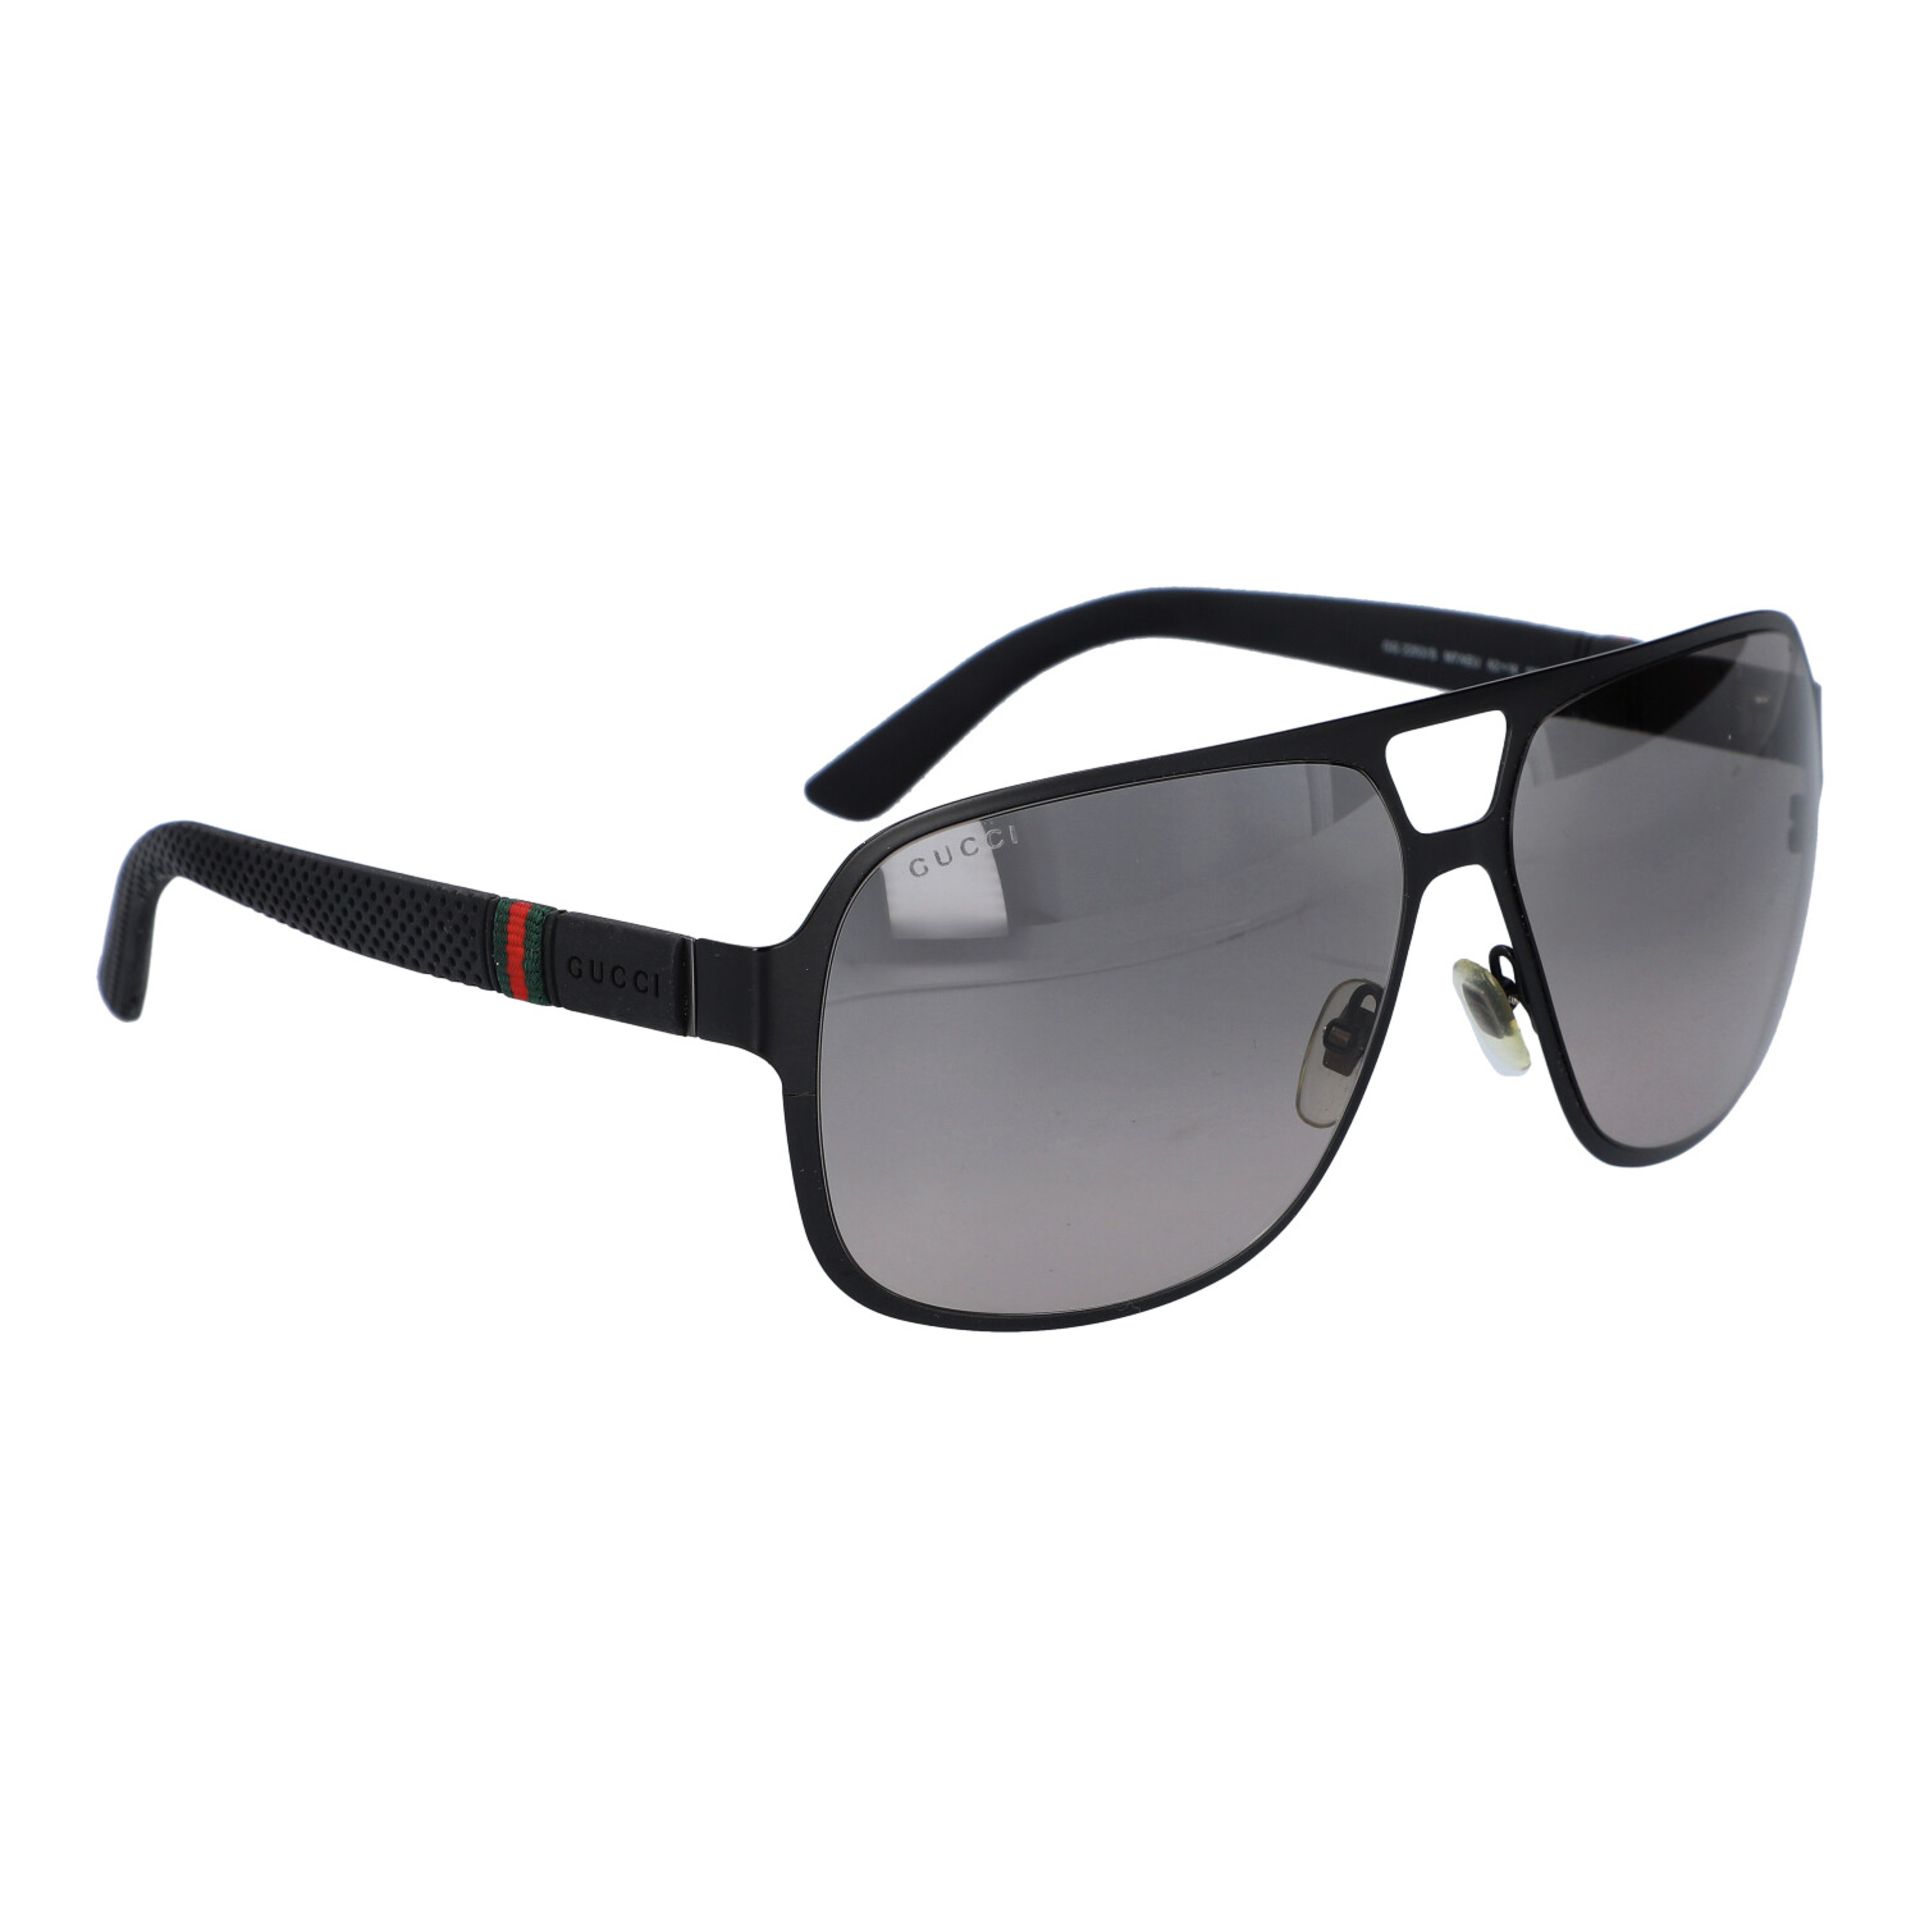 GUCCI Sonnenbrille mit Gläsern im Farbverlauf, KP: 175,50 € (2011), B: ca. 14,5 cm, - Bild 2 aus 4